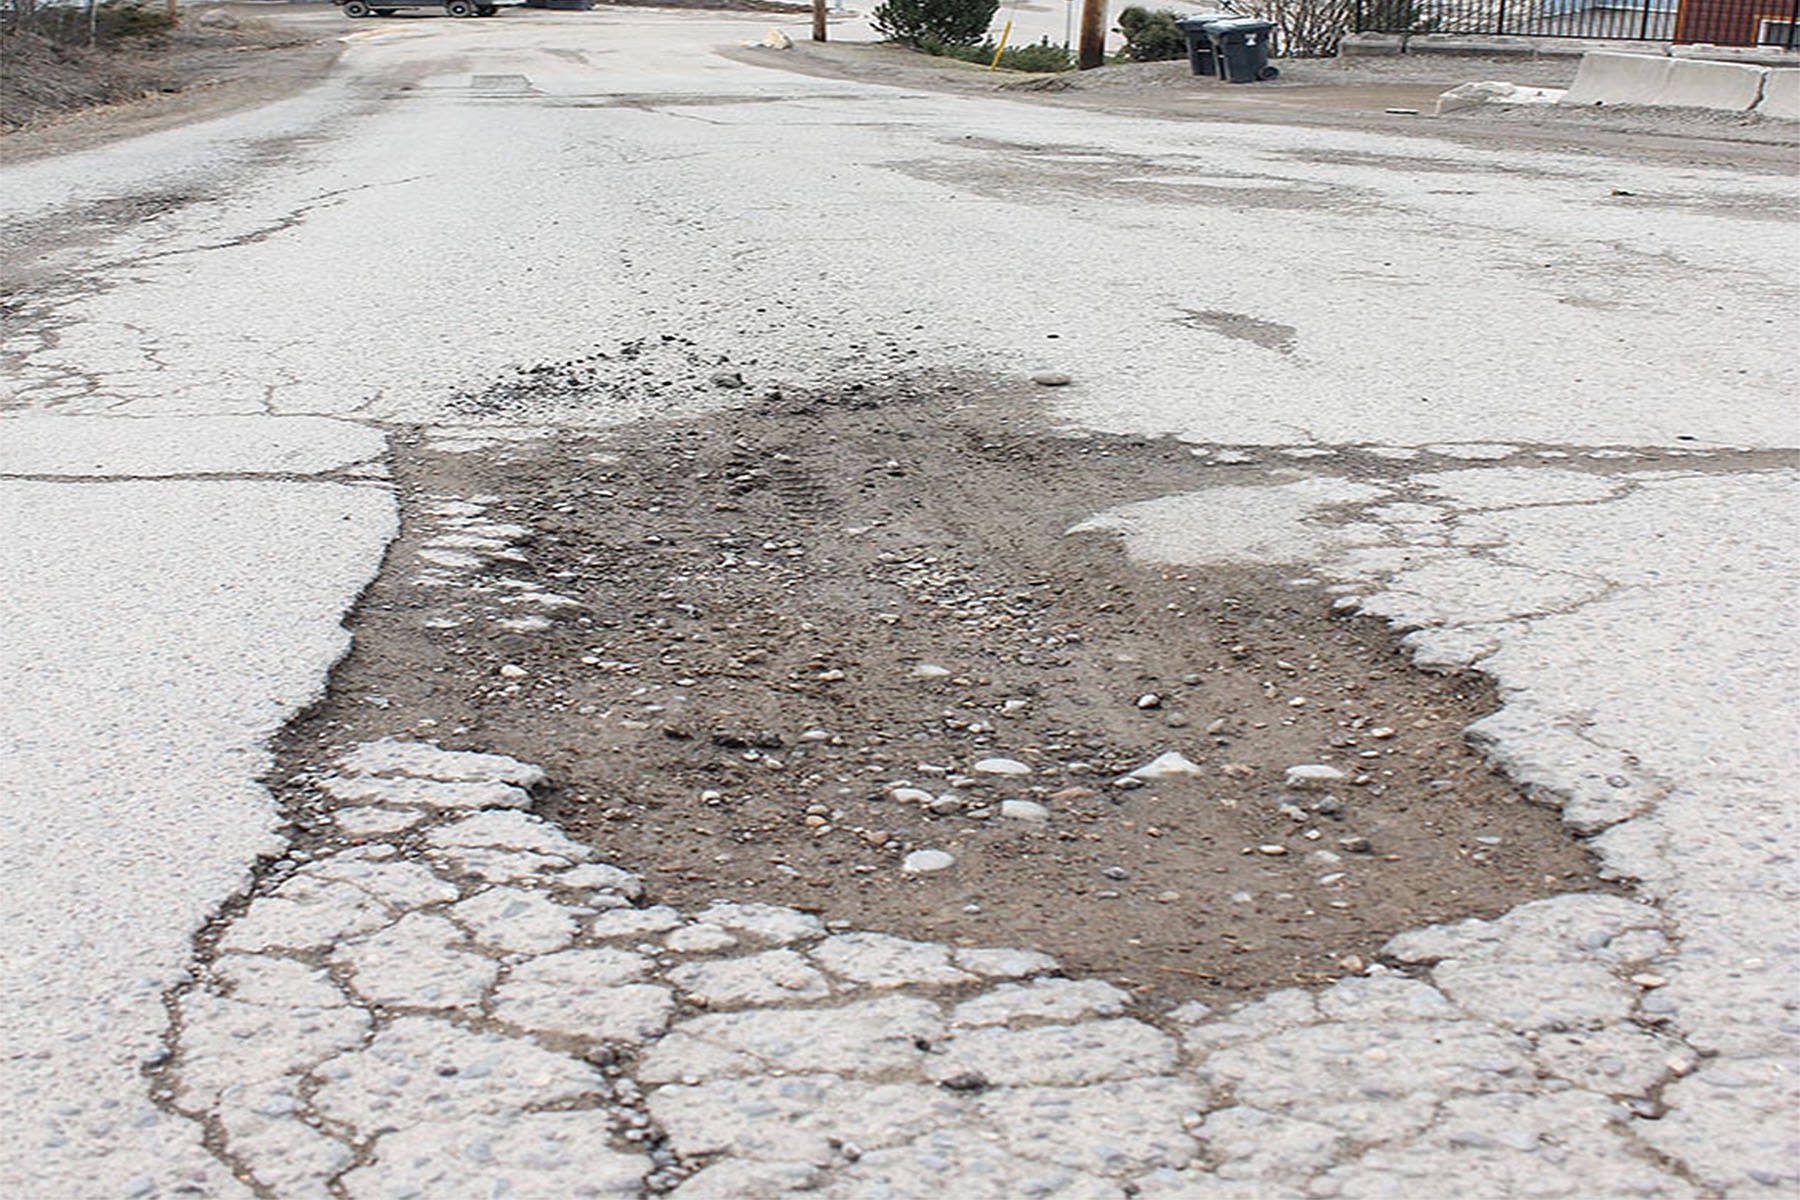 File photo of a pothole